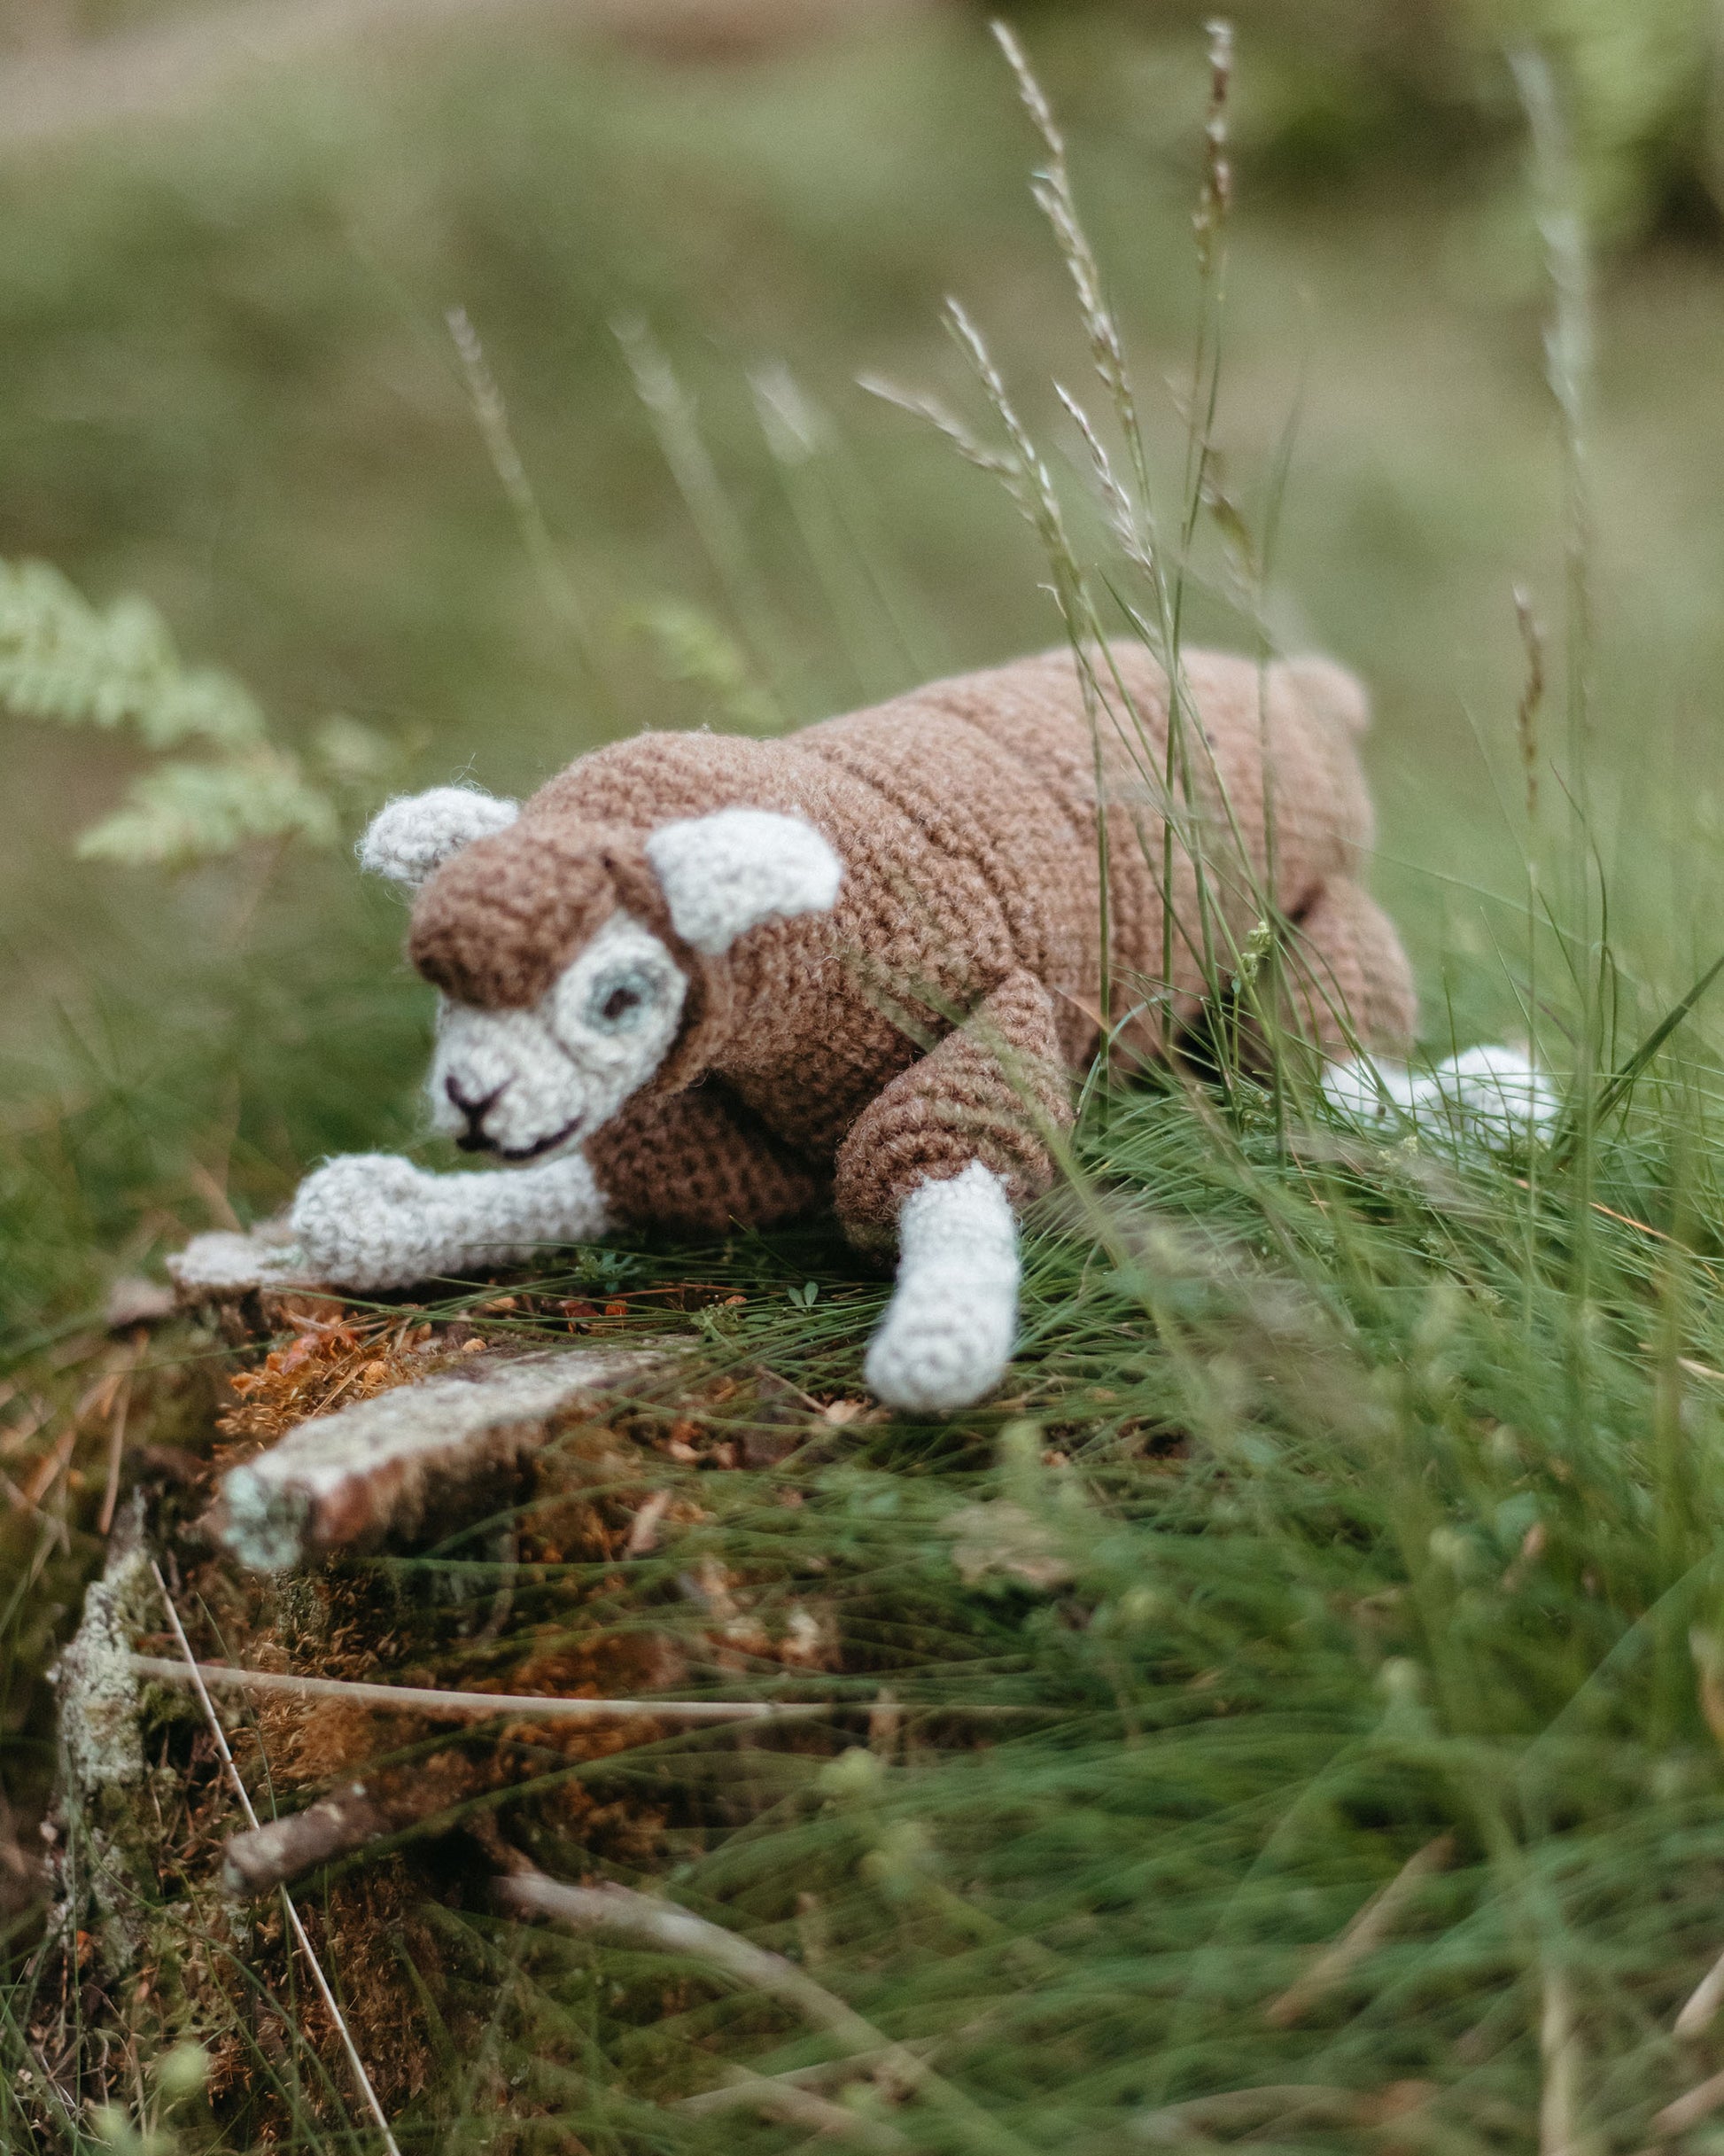 Bleep is an amigurumi sheep made from organic wool.